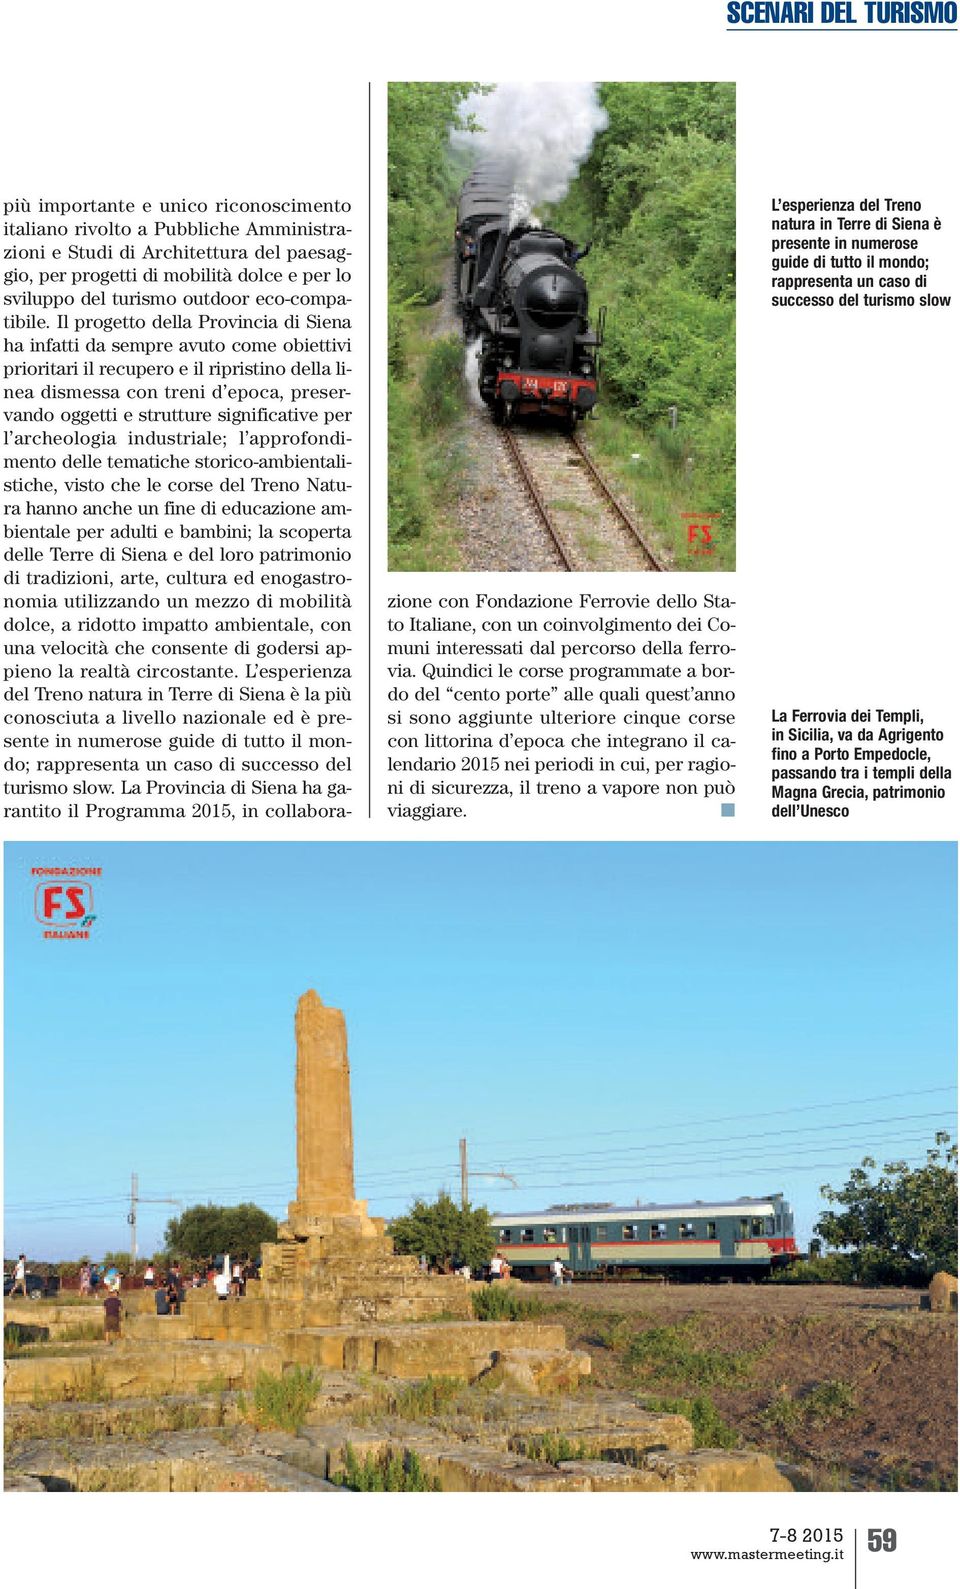 Il progetto della Provincia di Siena ha infatti da sempre avuto come obiettivi prioritari il recupero e il ripristino della linea dismessa con treni d epoca, preservando oggetti e strutture